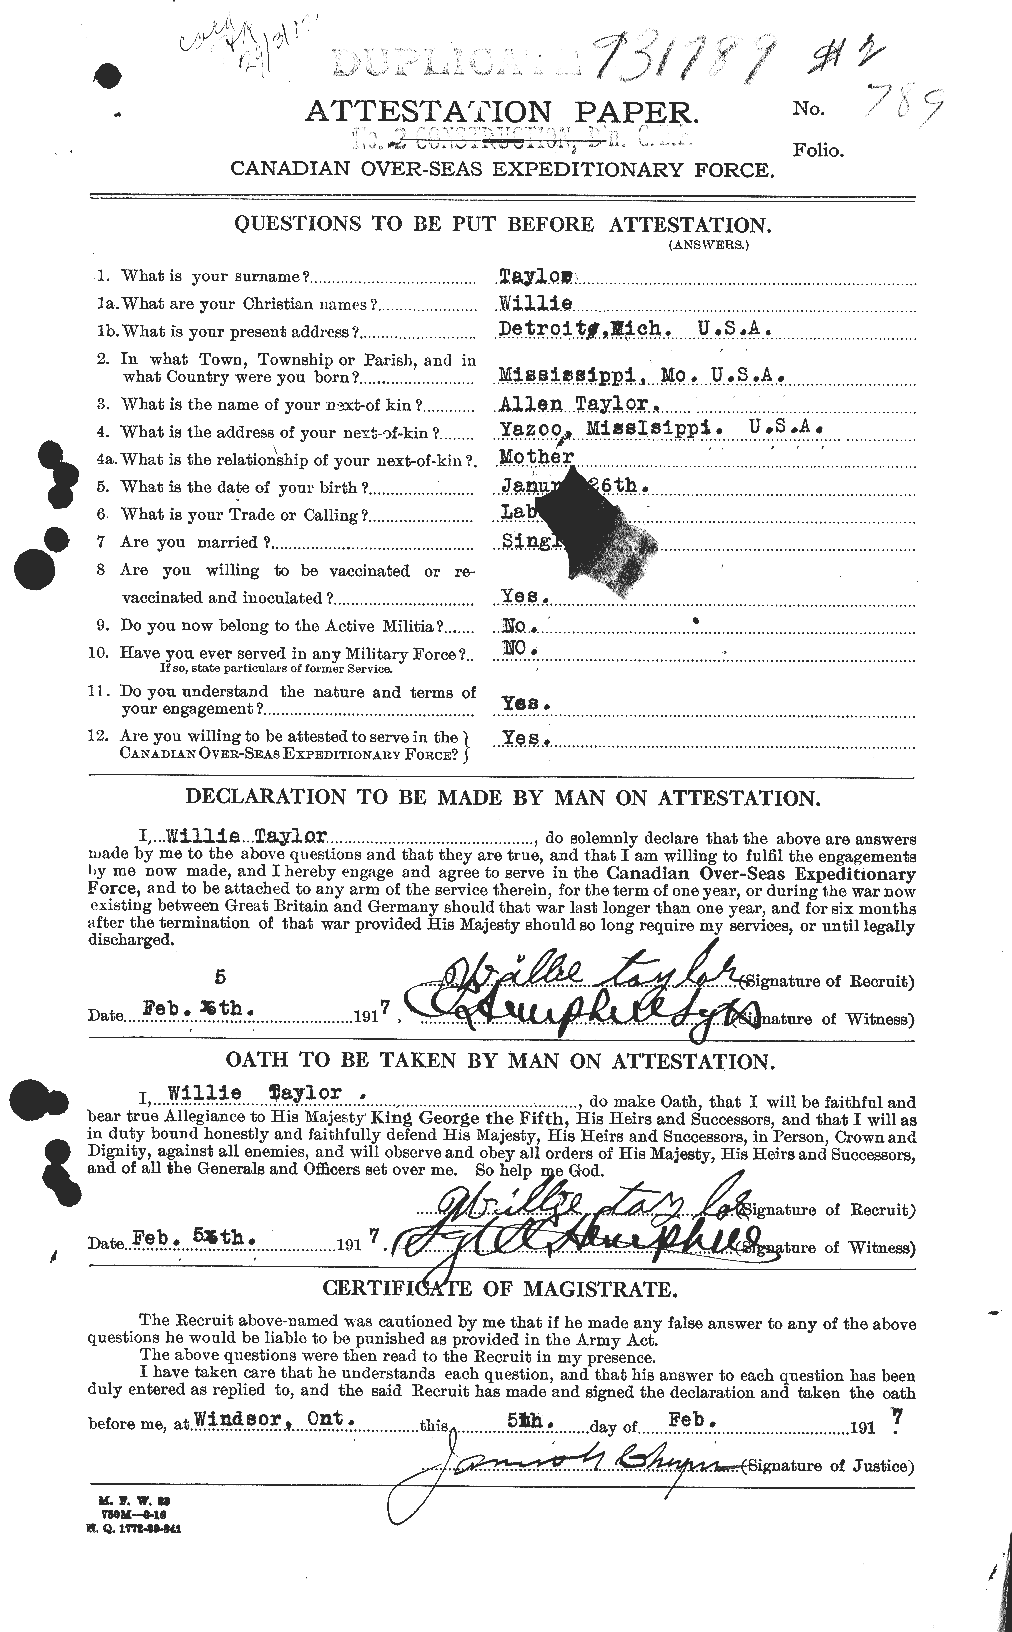 Dossiers du Personnel de la Première Guerre mondiale - CEC 628369a